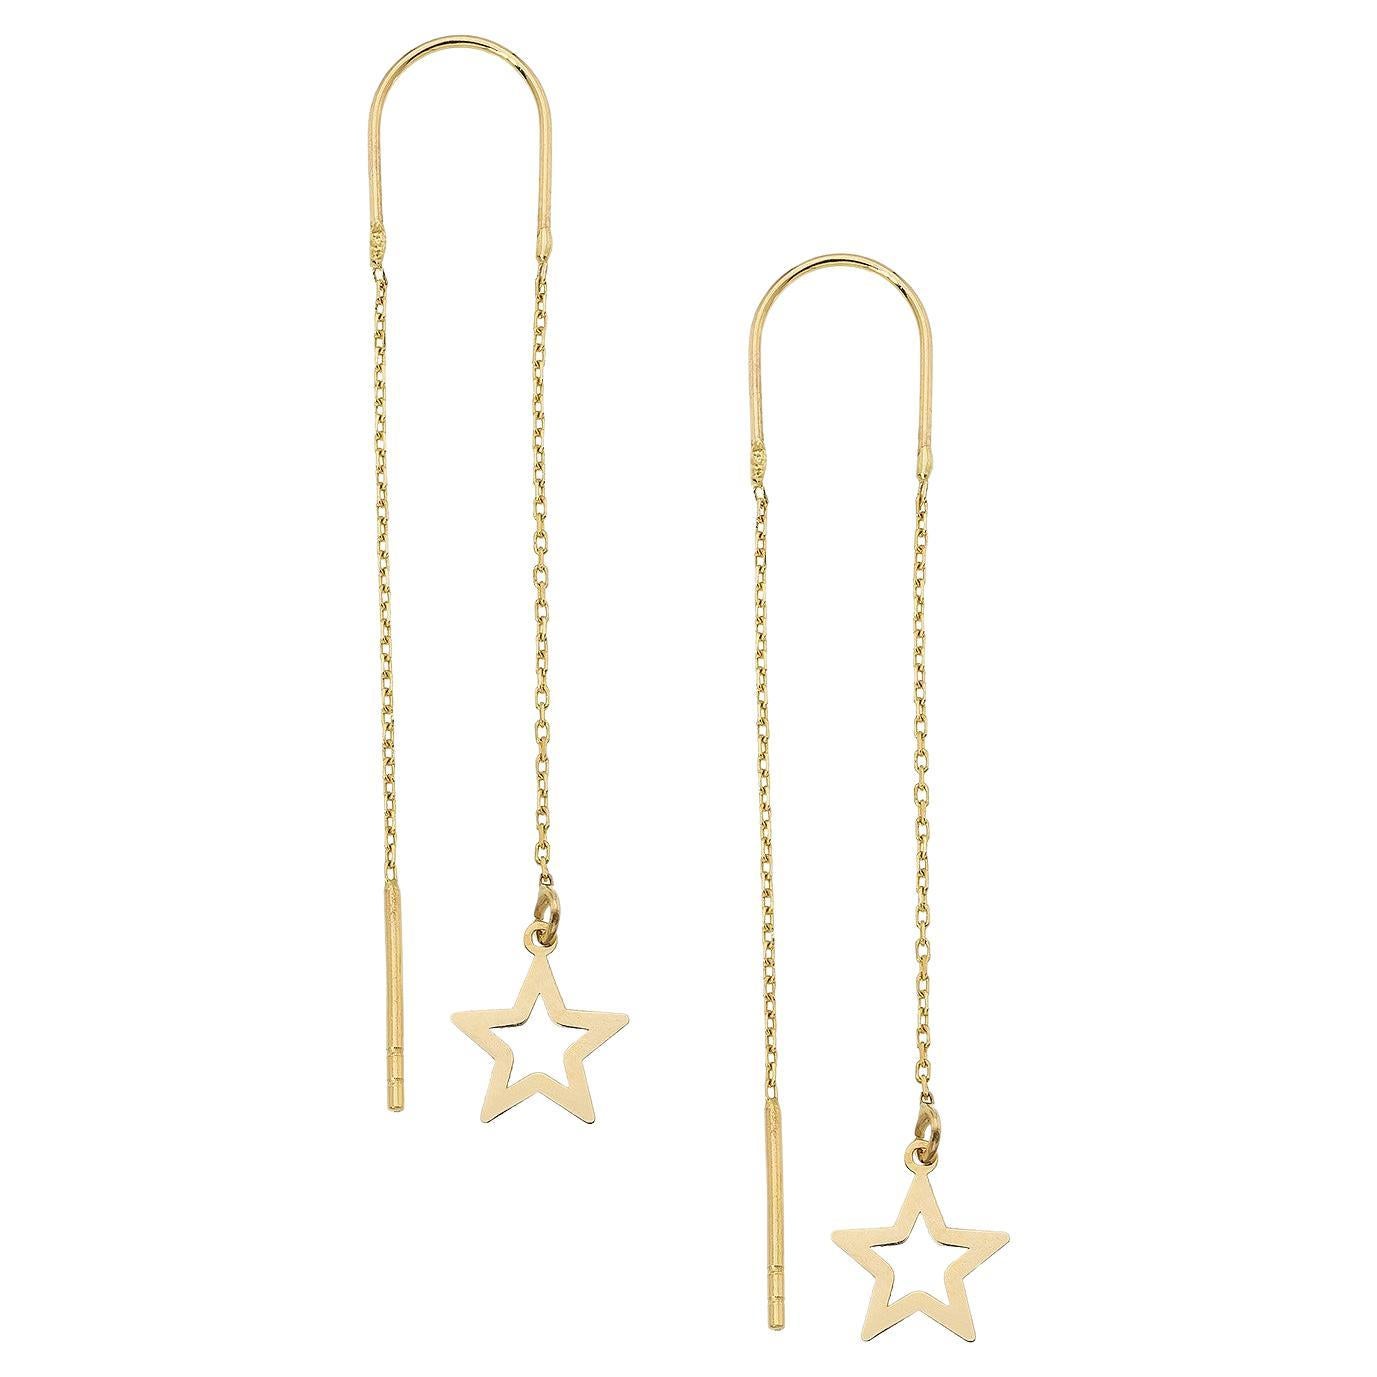 Starburst Threader Earrings in 14k gold. 